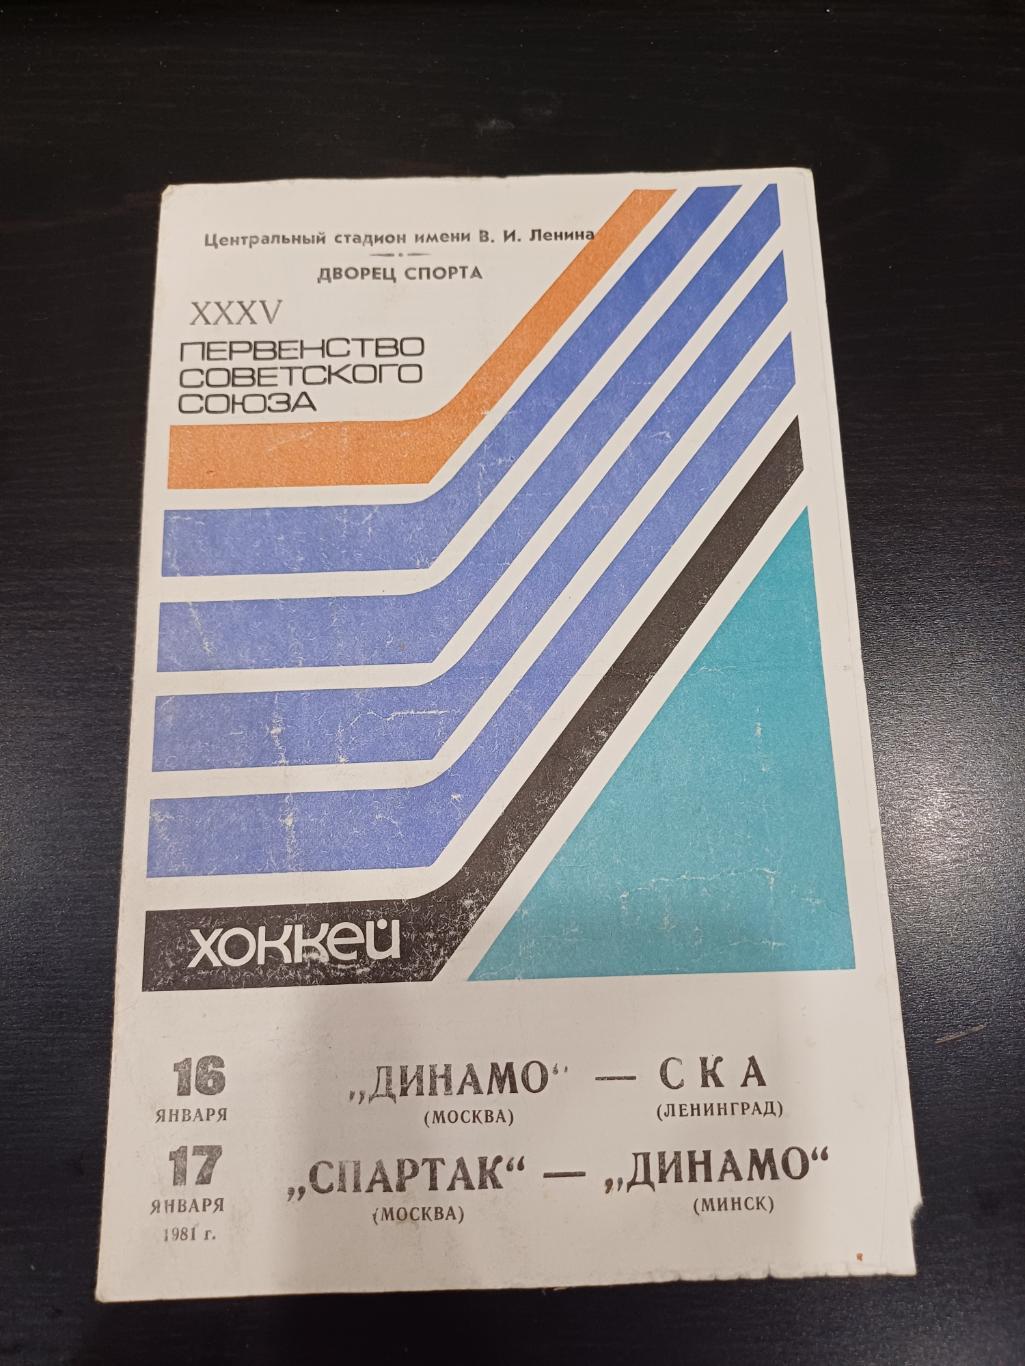 Динамо (Москва) - Ска (Ленинград)/Спартак (Москва) - Динамо (Минск) 1981